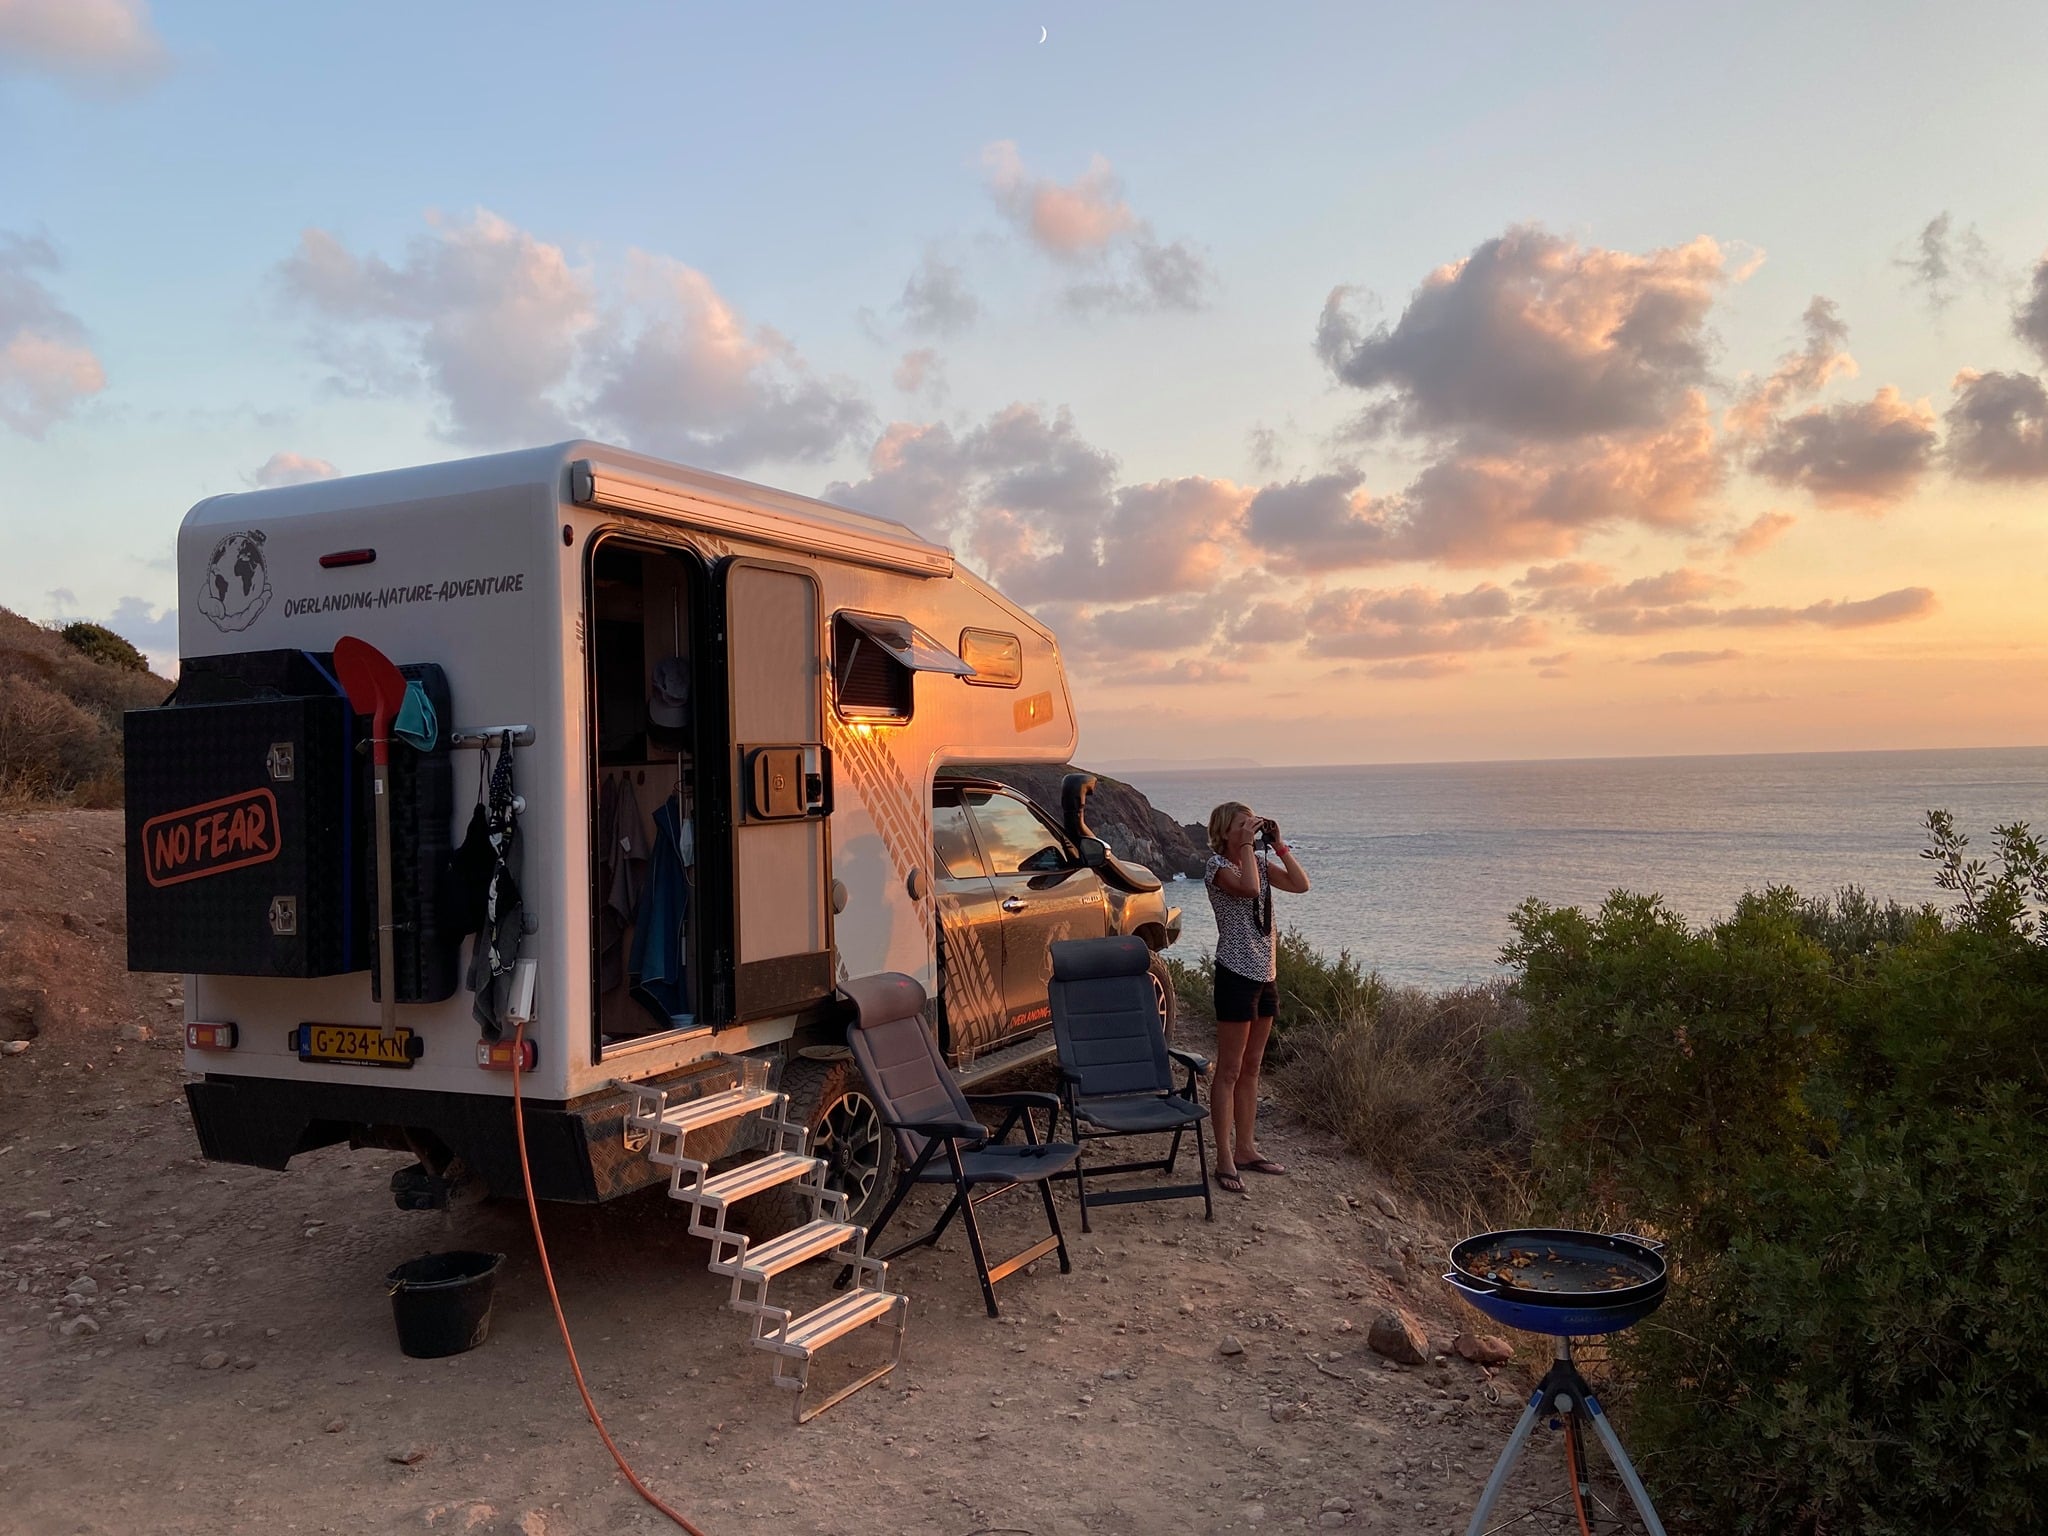 Vild camping på toppen av klippor med havsutsikt | NoFear 4x4 turnerar Sicilien